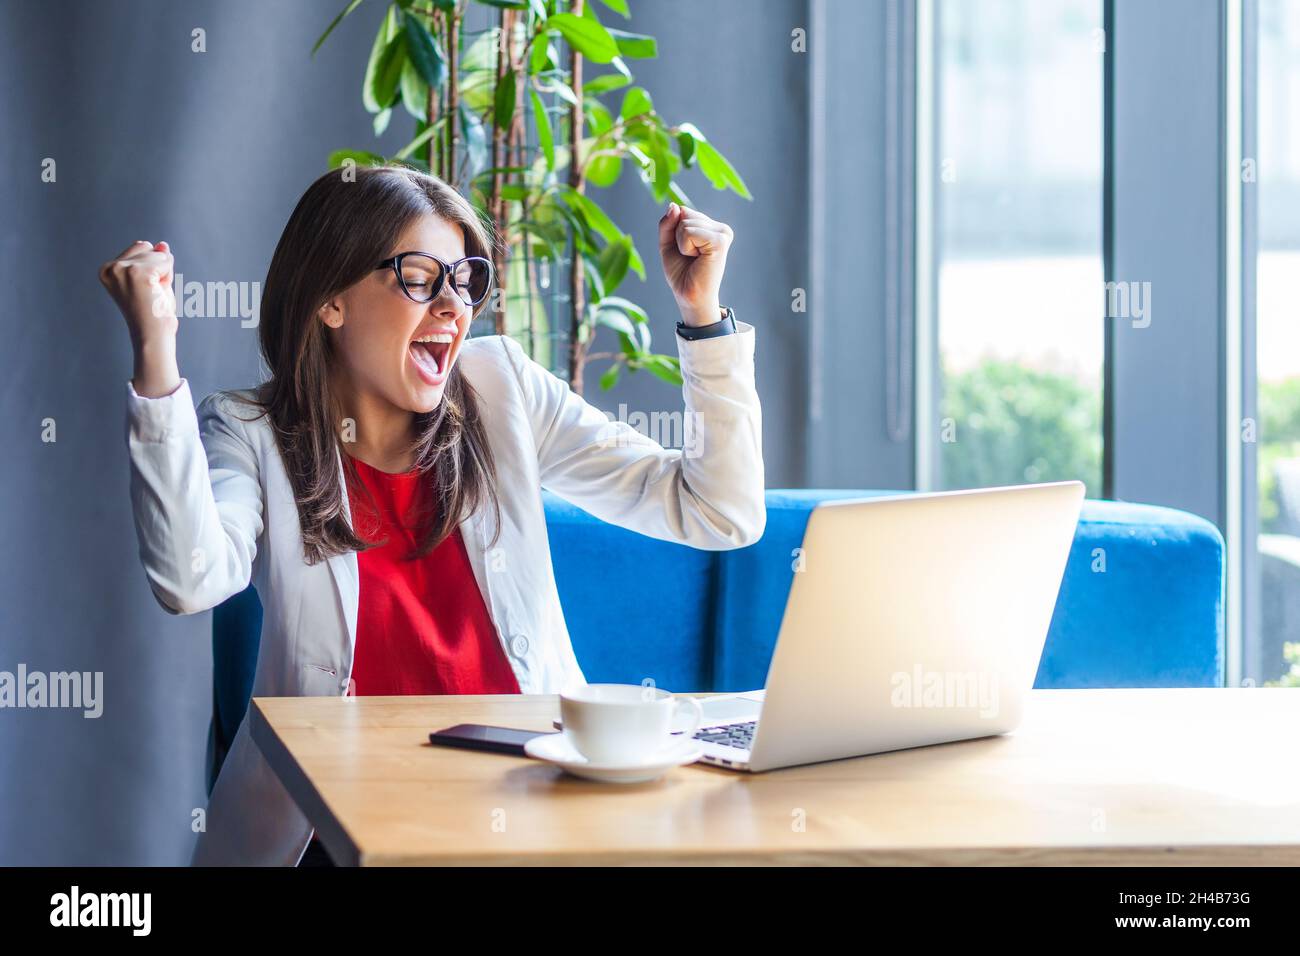 Une femme extrêmement heureuse en lunettes levant les mains et criant pour la joie, célébrant le succès des affaires en ligne, se réjouissant de la victoire tout en travaillant sur ordinateur portable.Prise de vue en intérieur, café ou arrière-plan de bureau. Banque D'Images